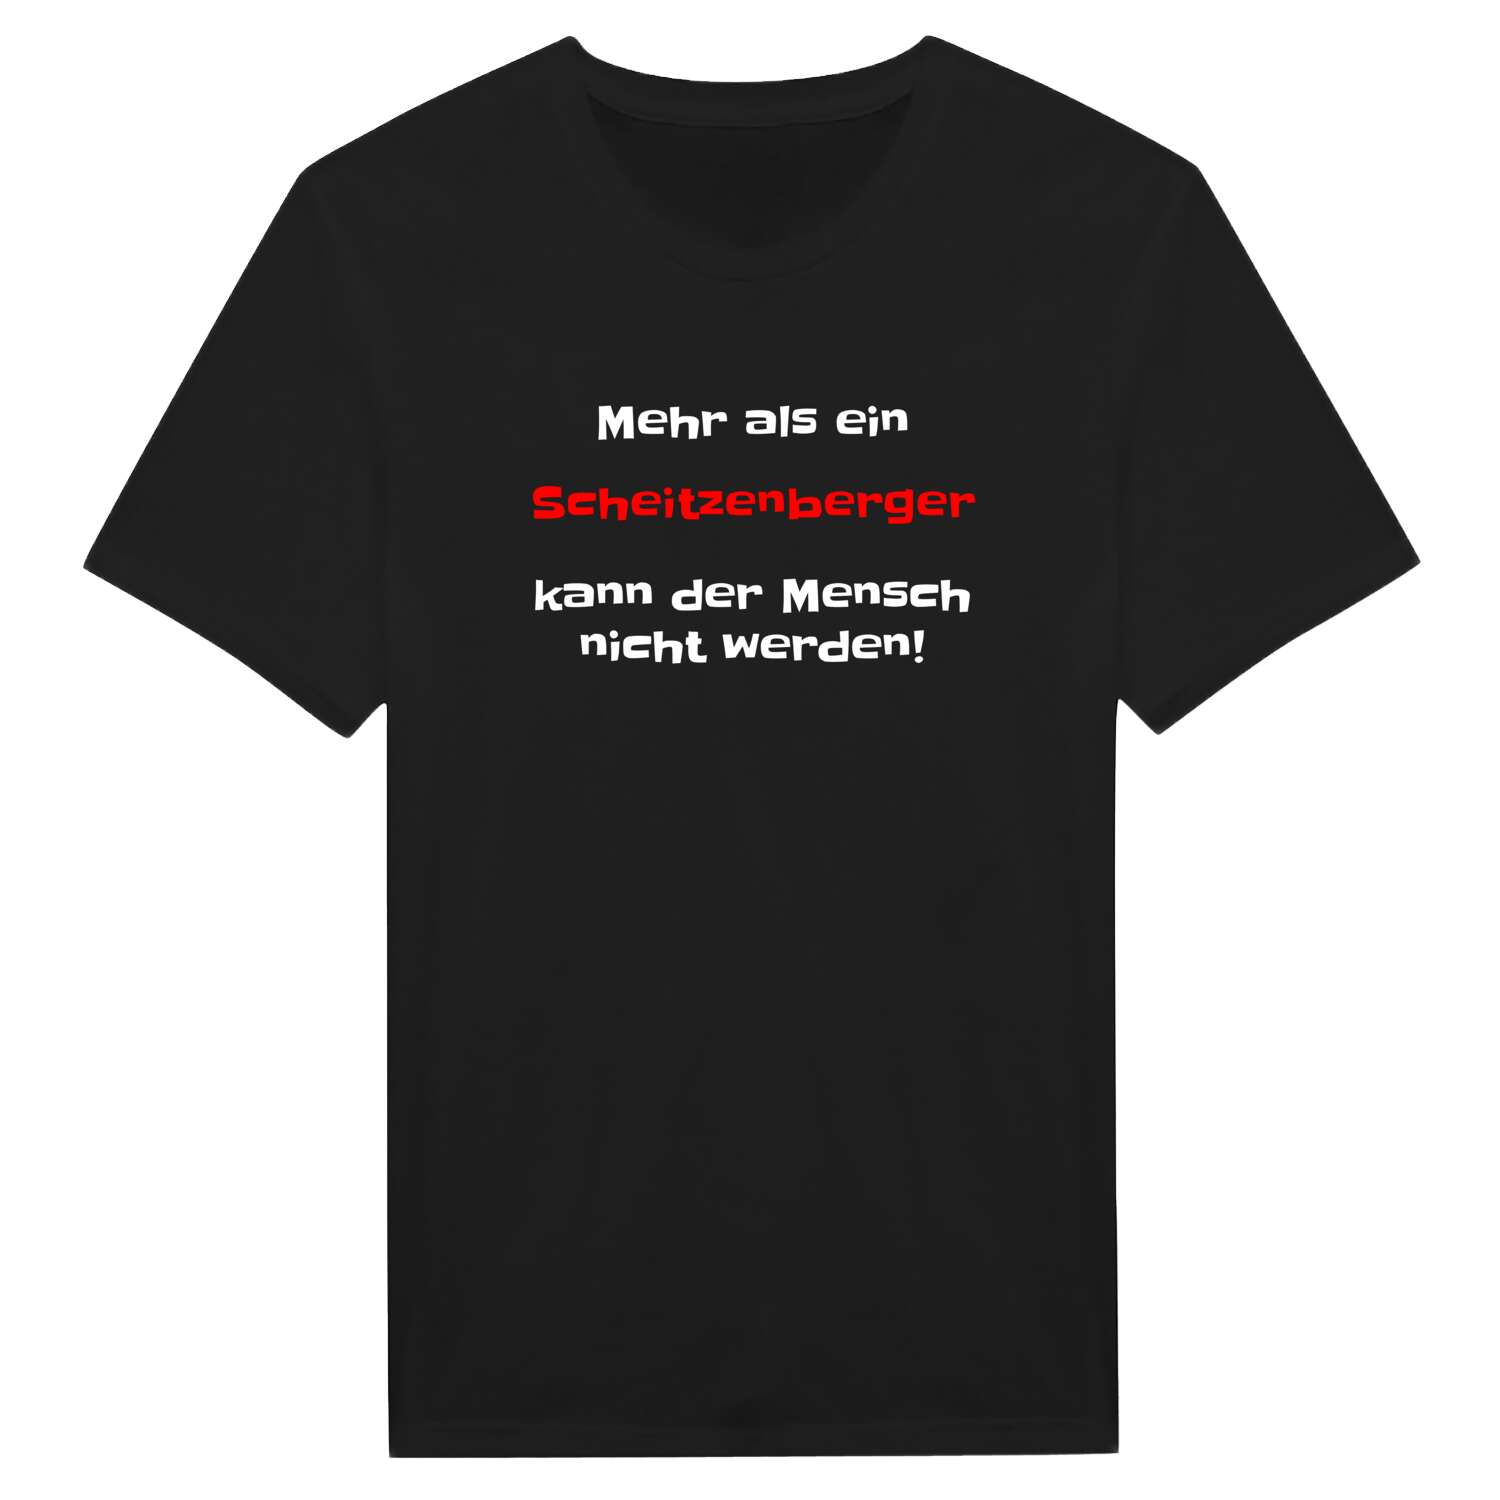 Scheitzenberg T-Shirt »Mehr als ein«